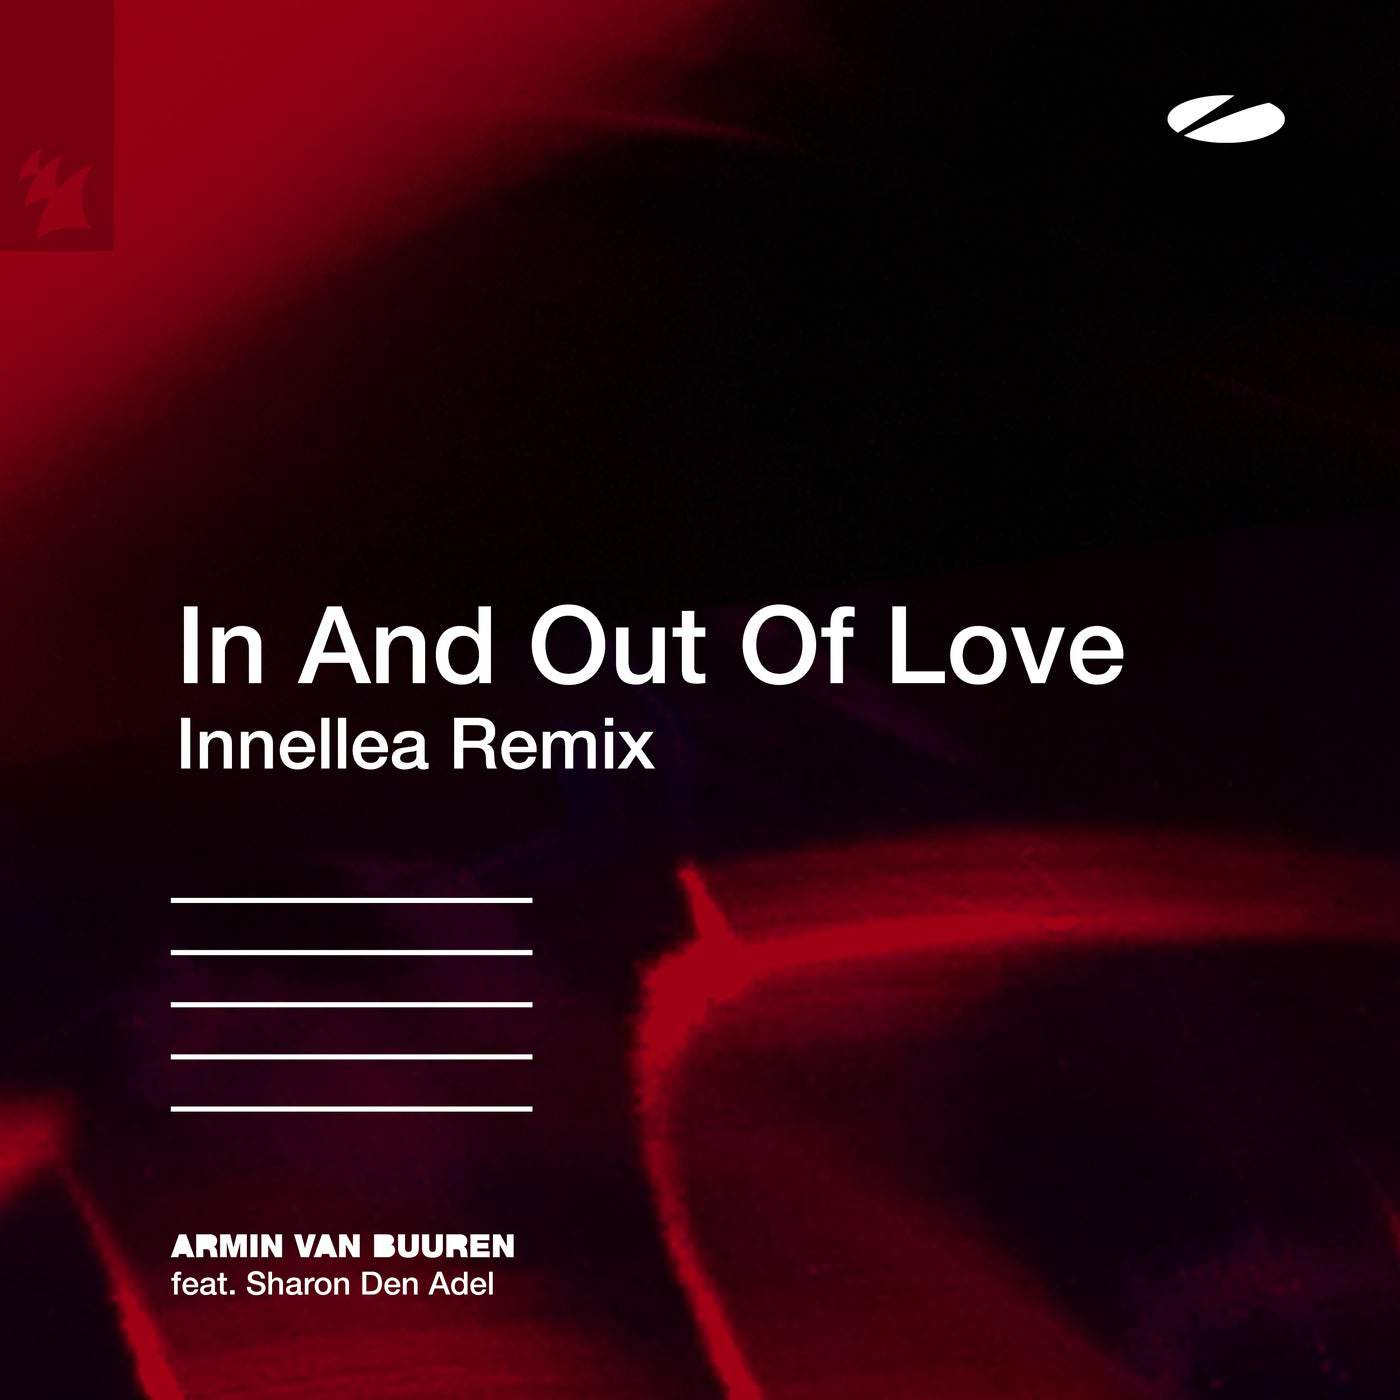 image cover: Armin van Buuren, Sharon Den Adel - In And Out Of Love - Innellea Remix